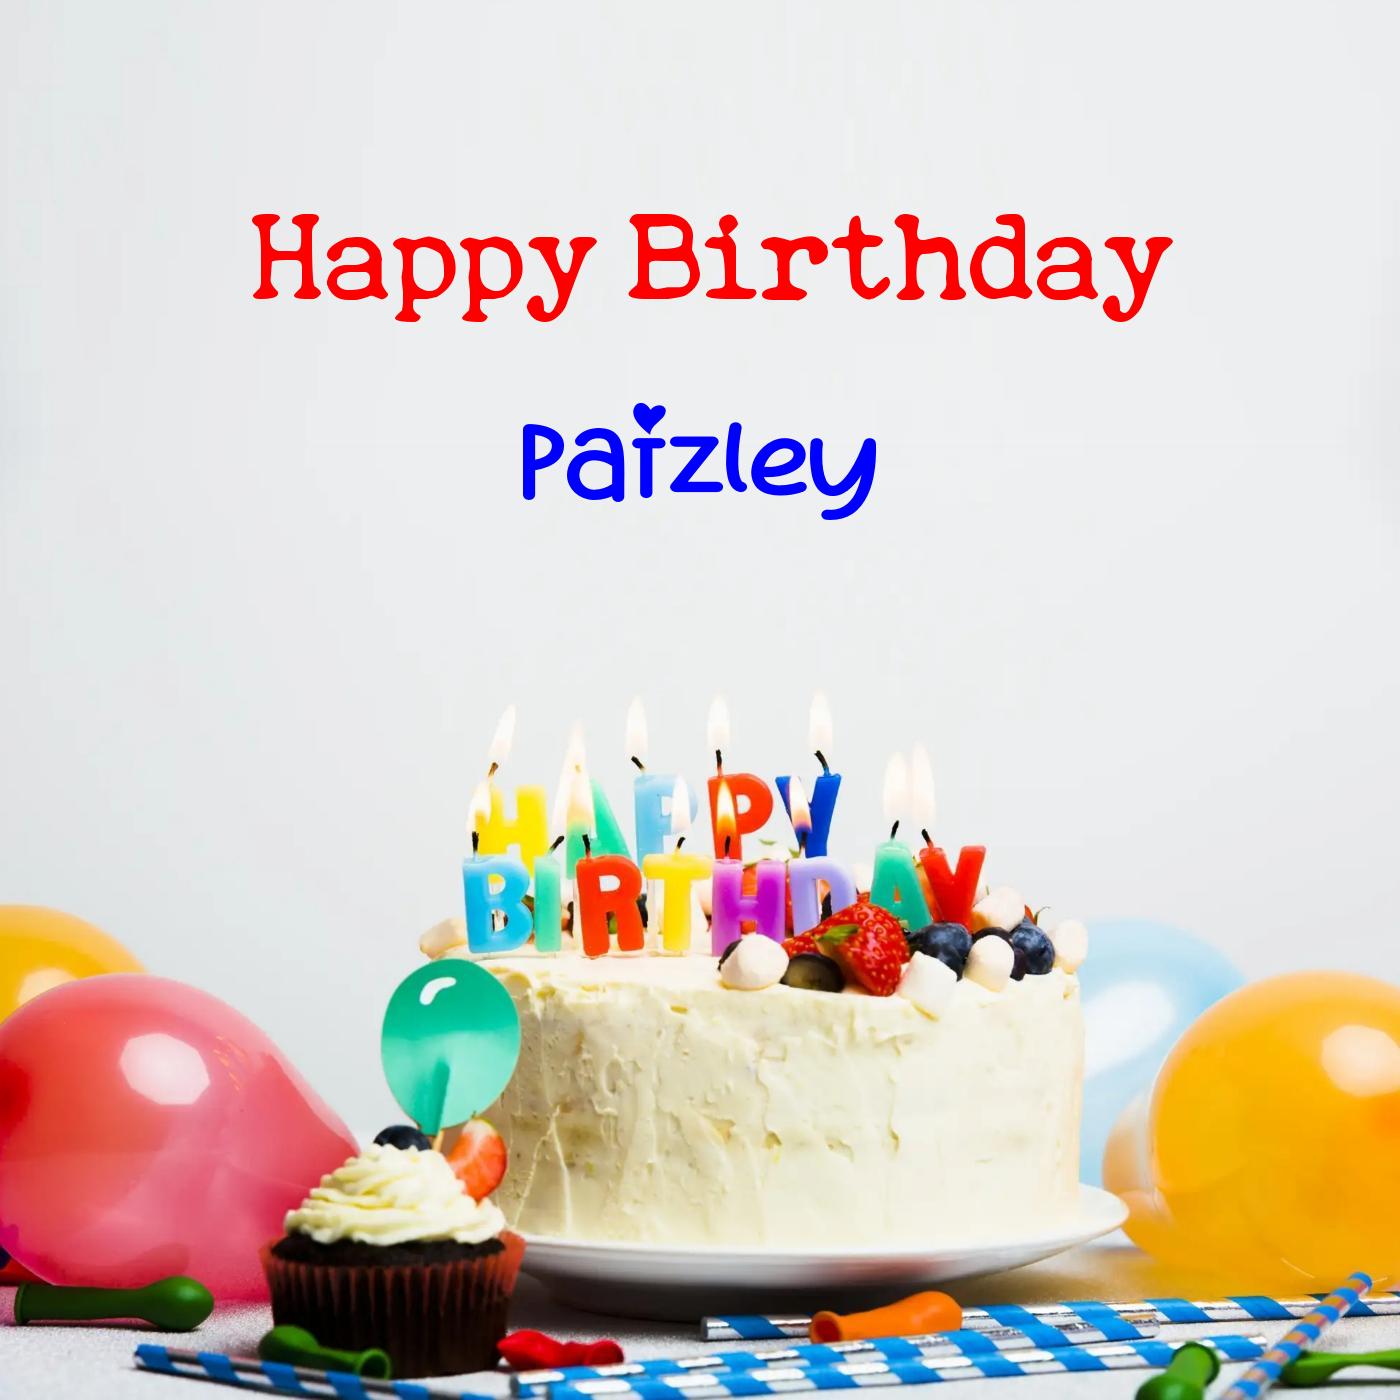 Happy Birthday Paizley Cake Balloons Card